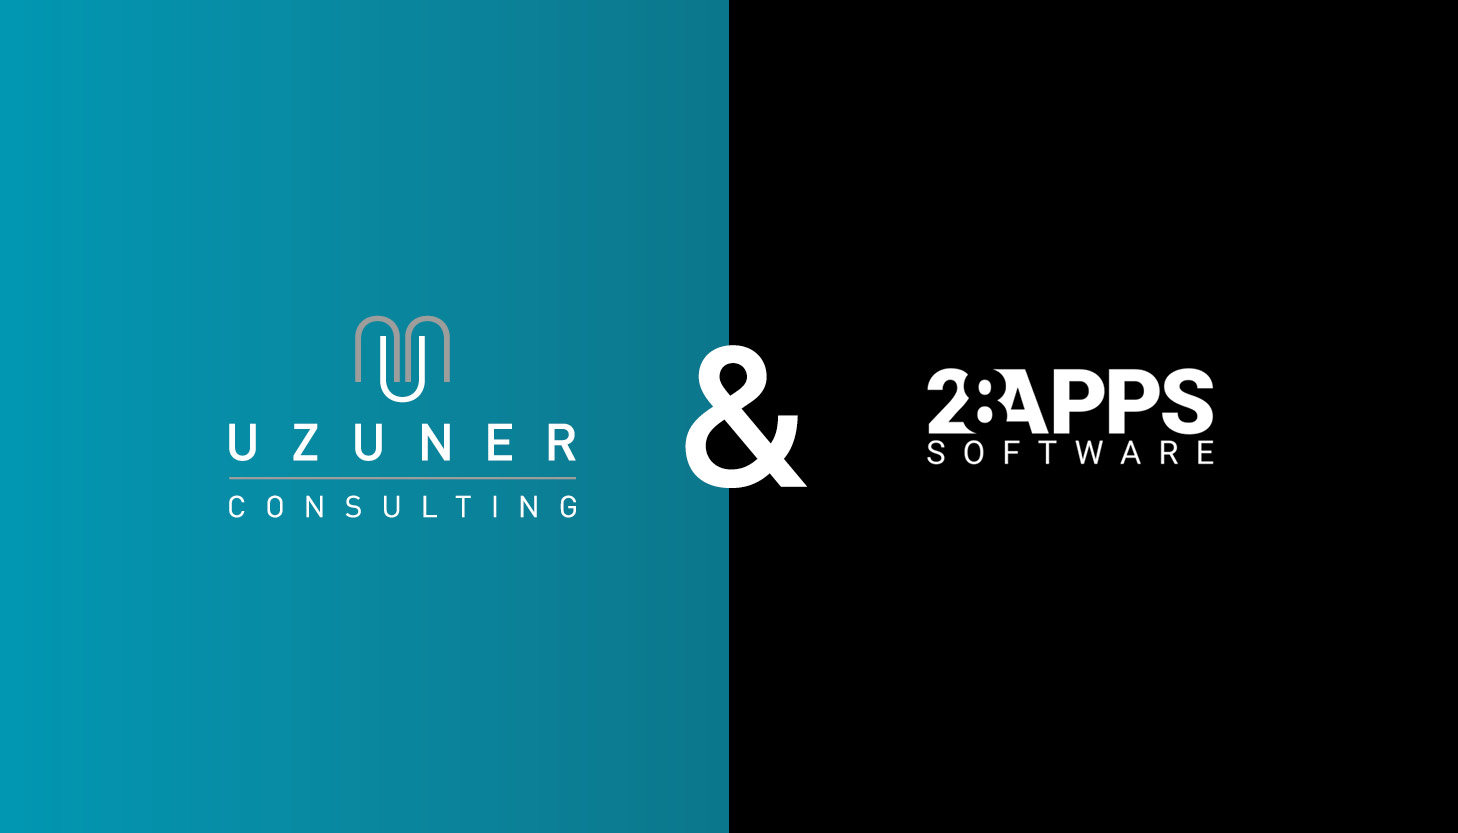 28Apps Software GmbH wird Teil der Uzuner Consulting GmbH